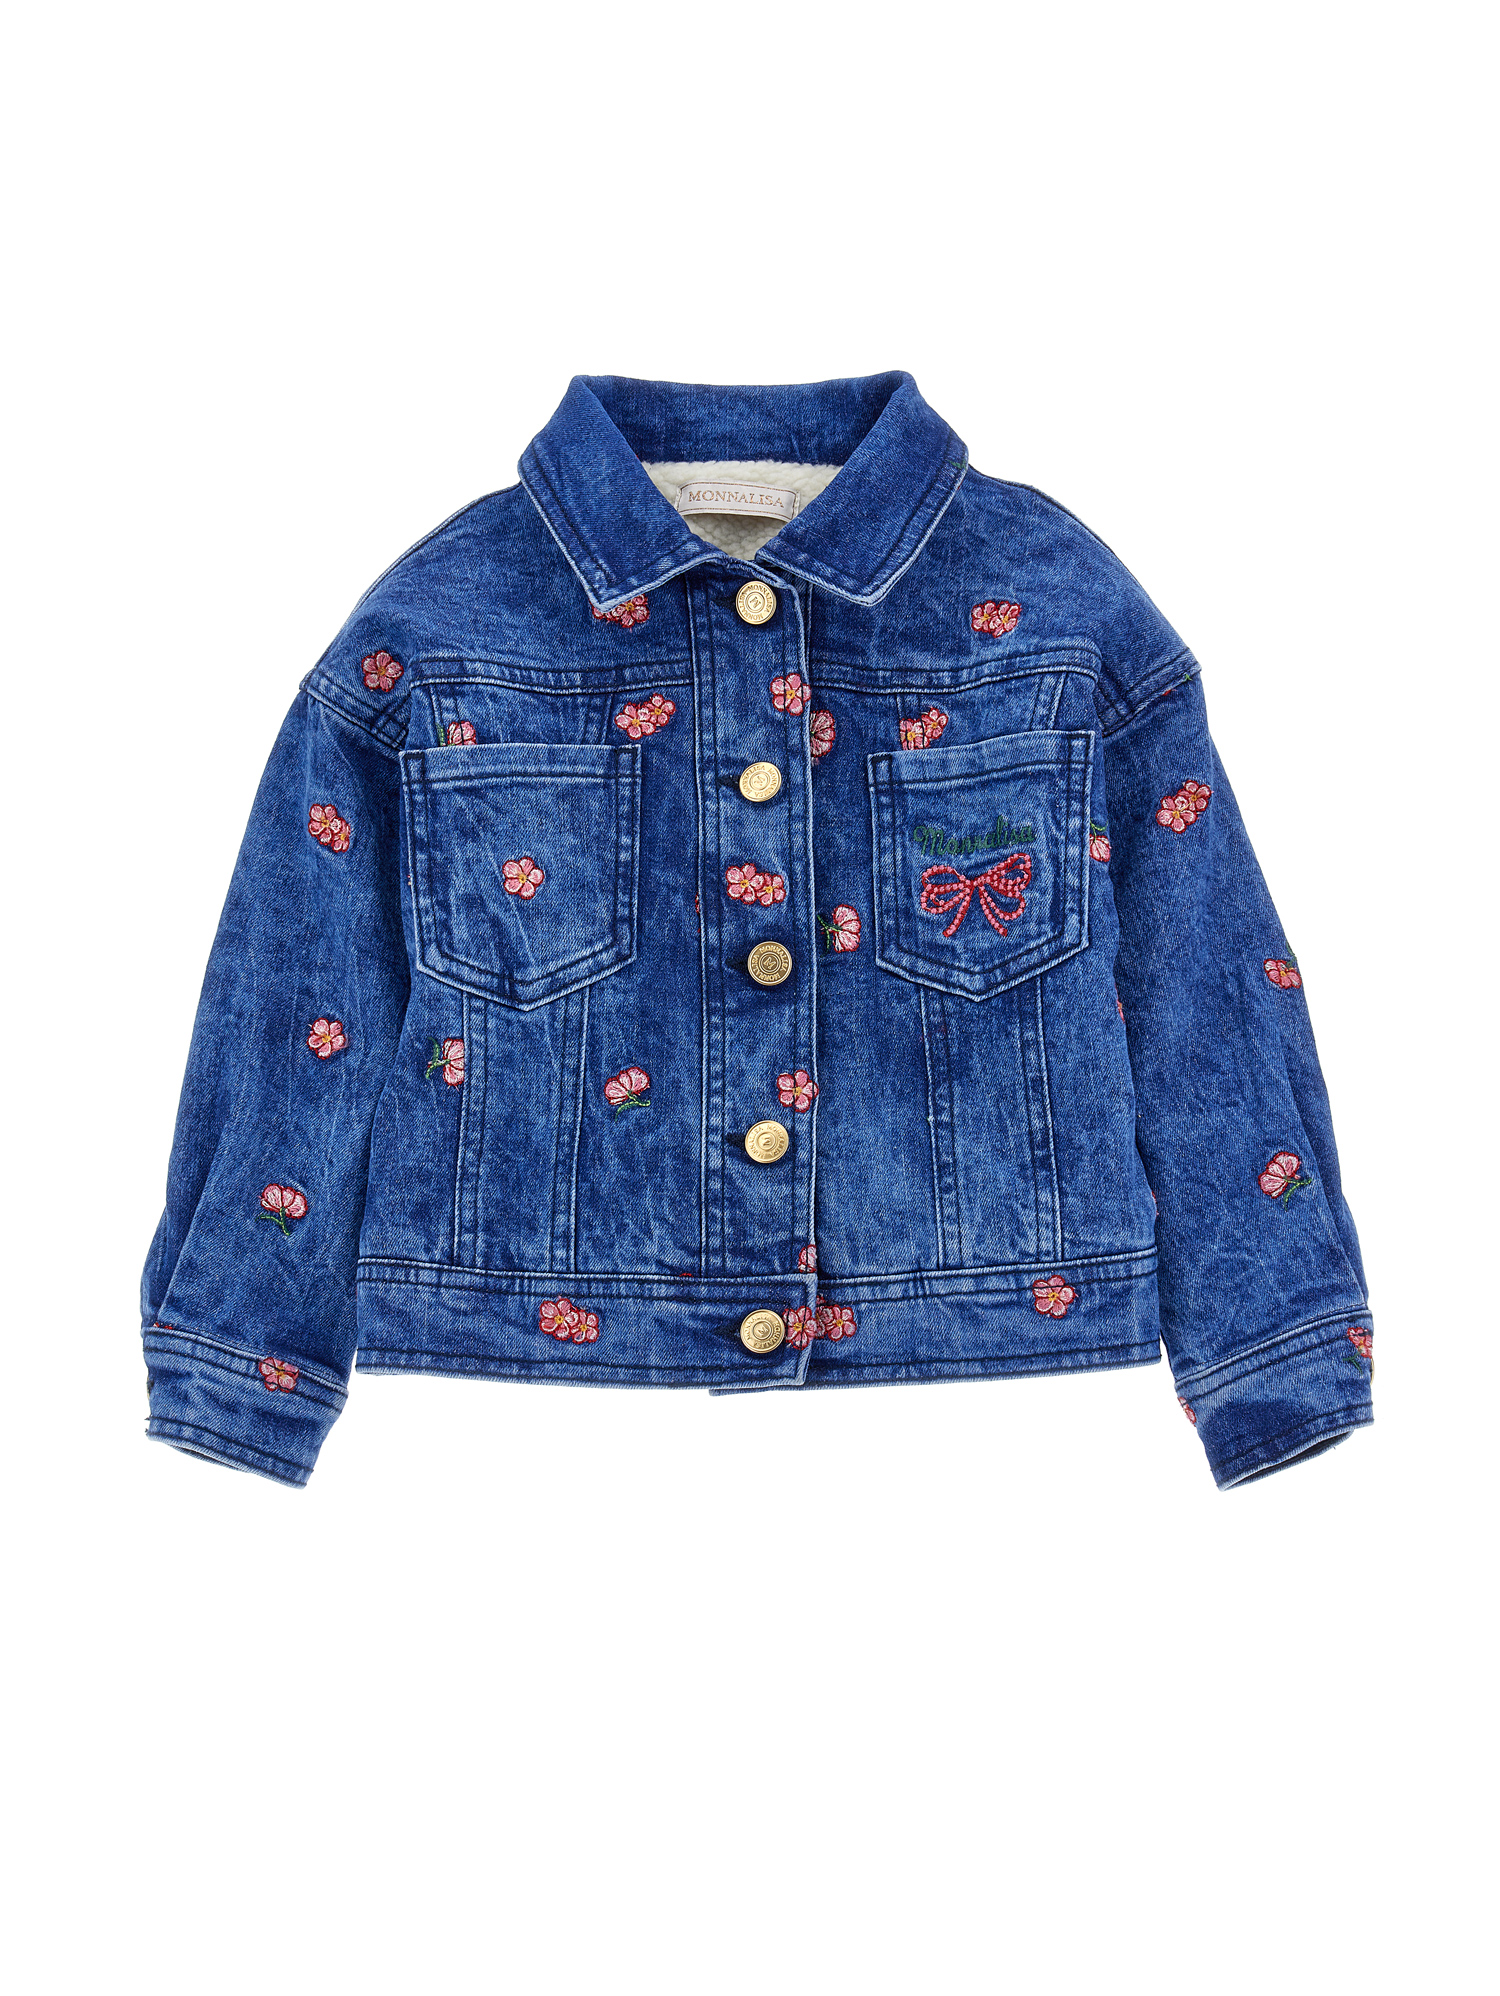 Monnalisa Kids'   Denim Jacket With Plush In Denim Blue + Pink